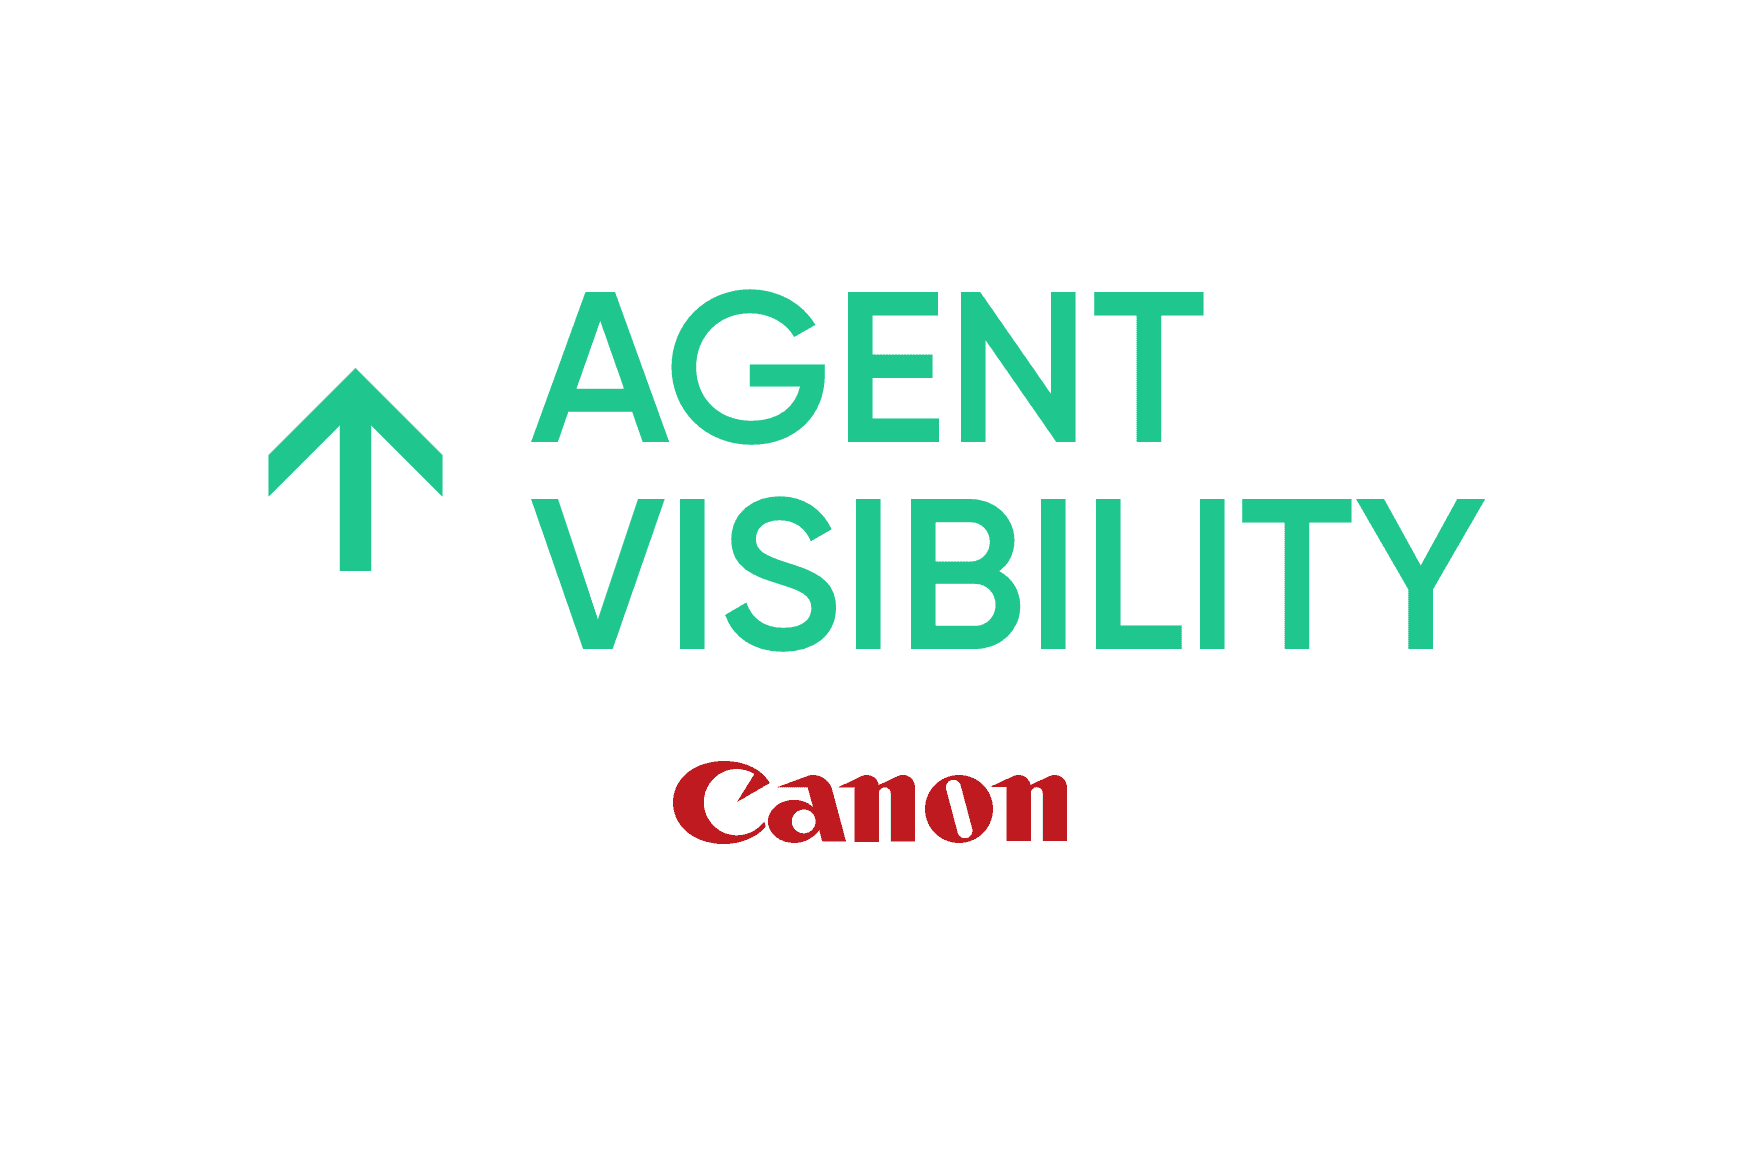 Canon: Verbesserte Produktivität und Visibilität der Agenten